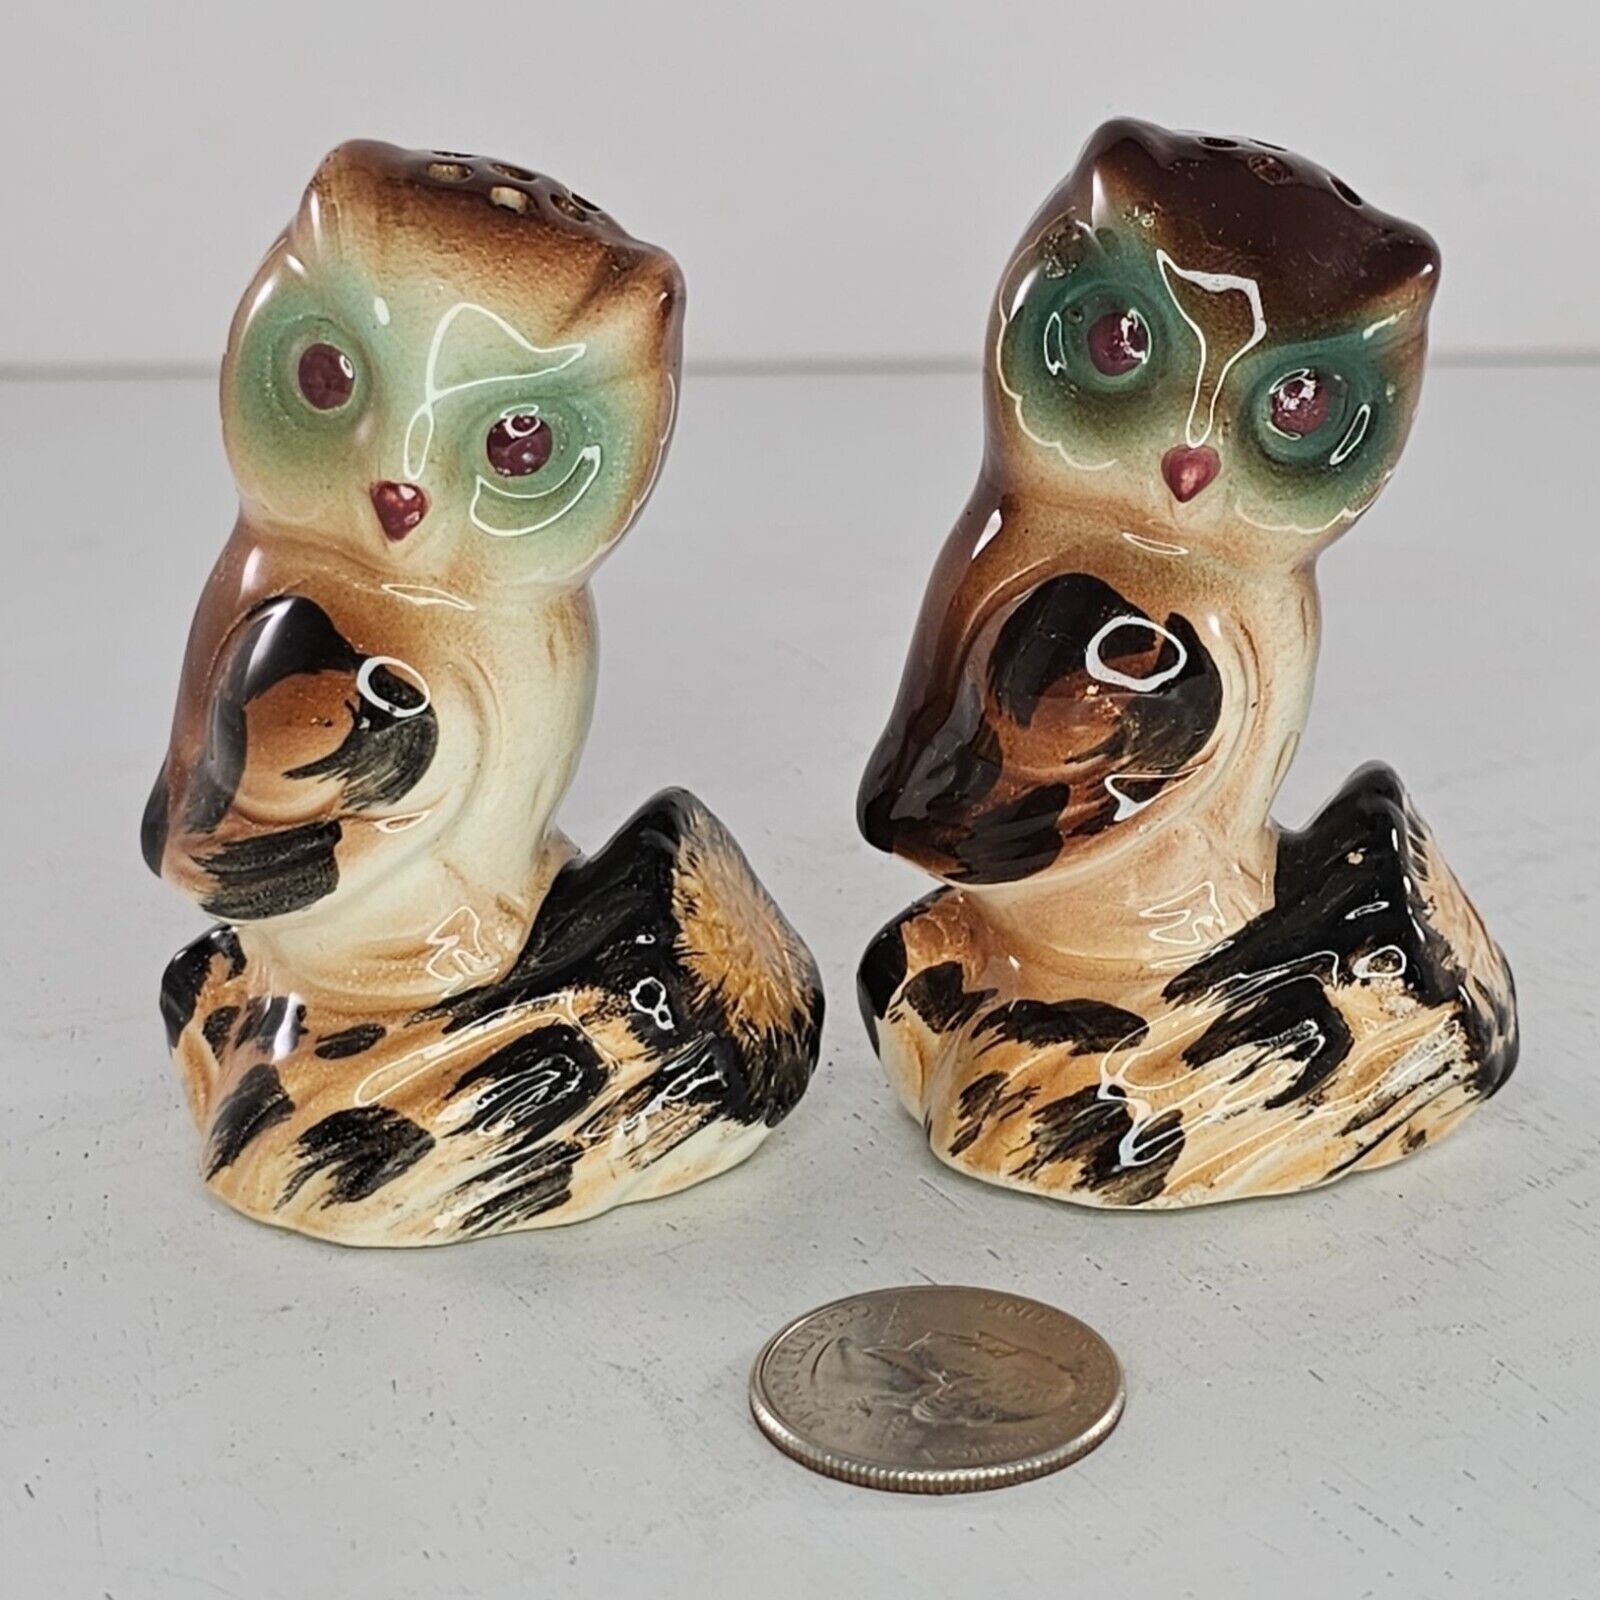 Primary image for Vintage Japan Owl Salt Pepper Shaker Set Ceramic Brown Green